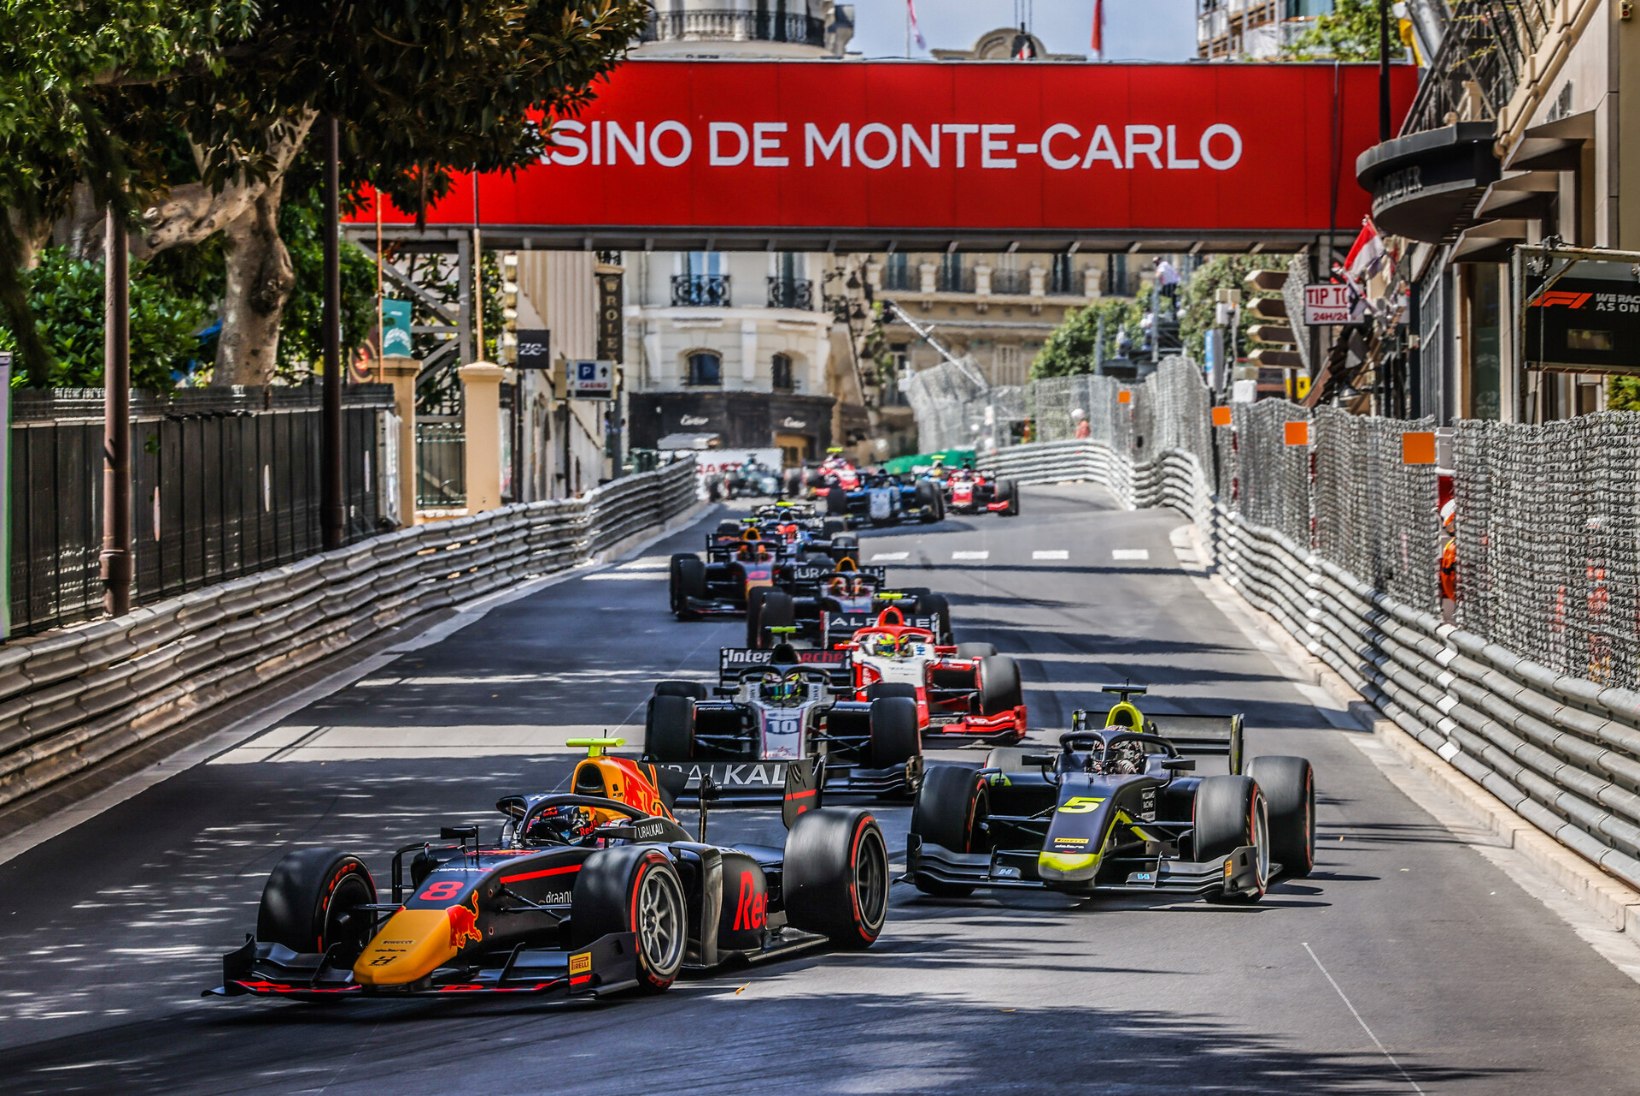 Sprindis poodiumile jõudnud Vips piirdus Monacos põhisõidus kaheksanda kohaga